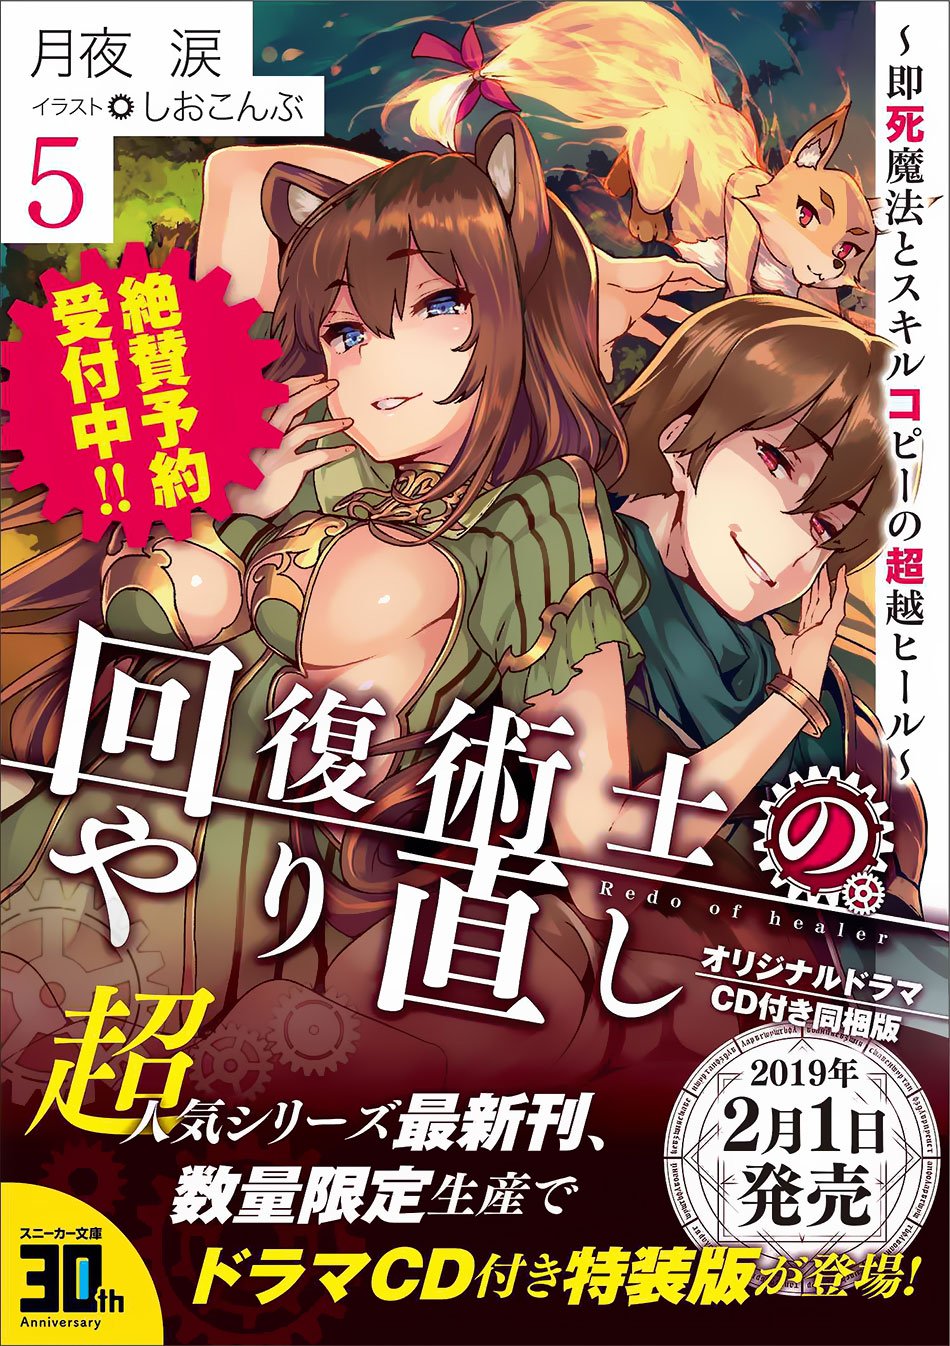 Read Kaifuku Jutsushi No Yarinaoshi Manga English New Chapters Online Free Mangaclash